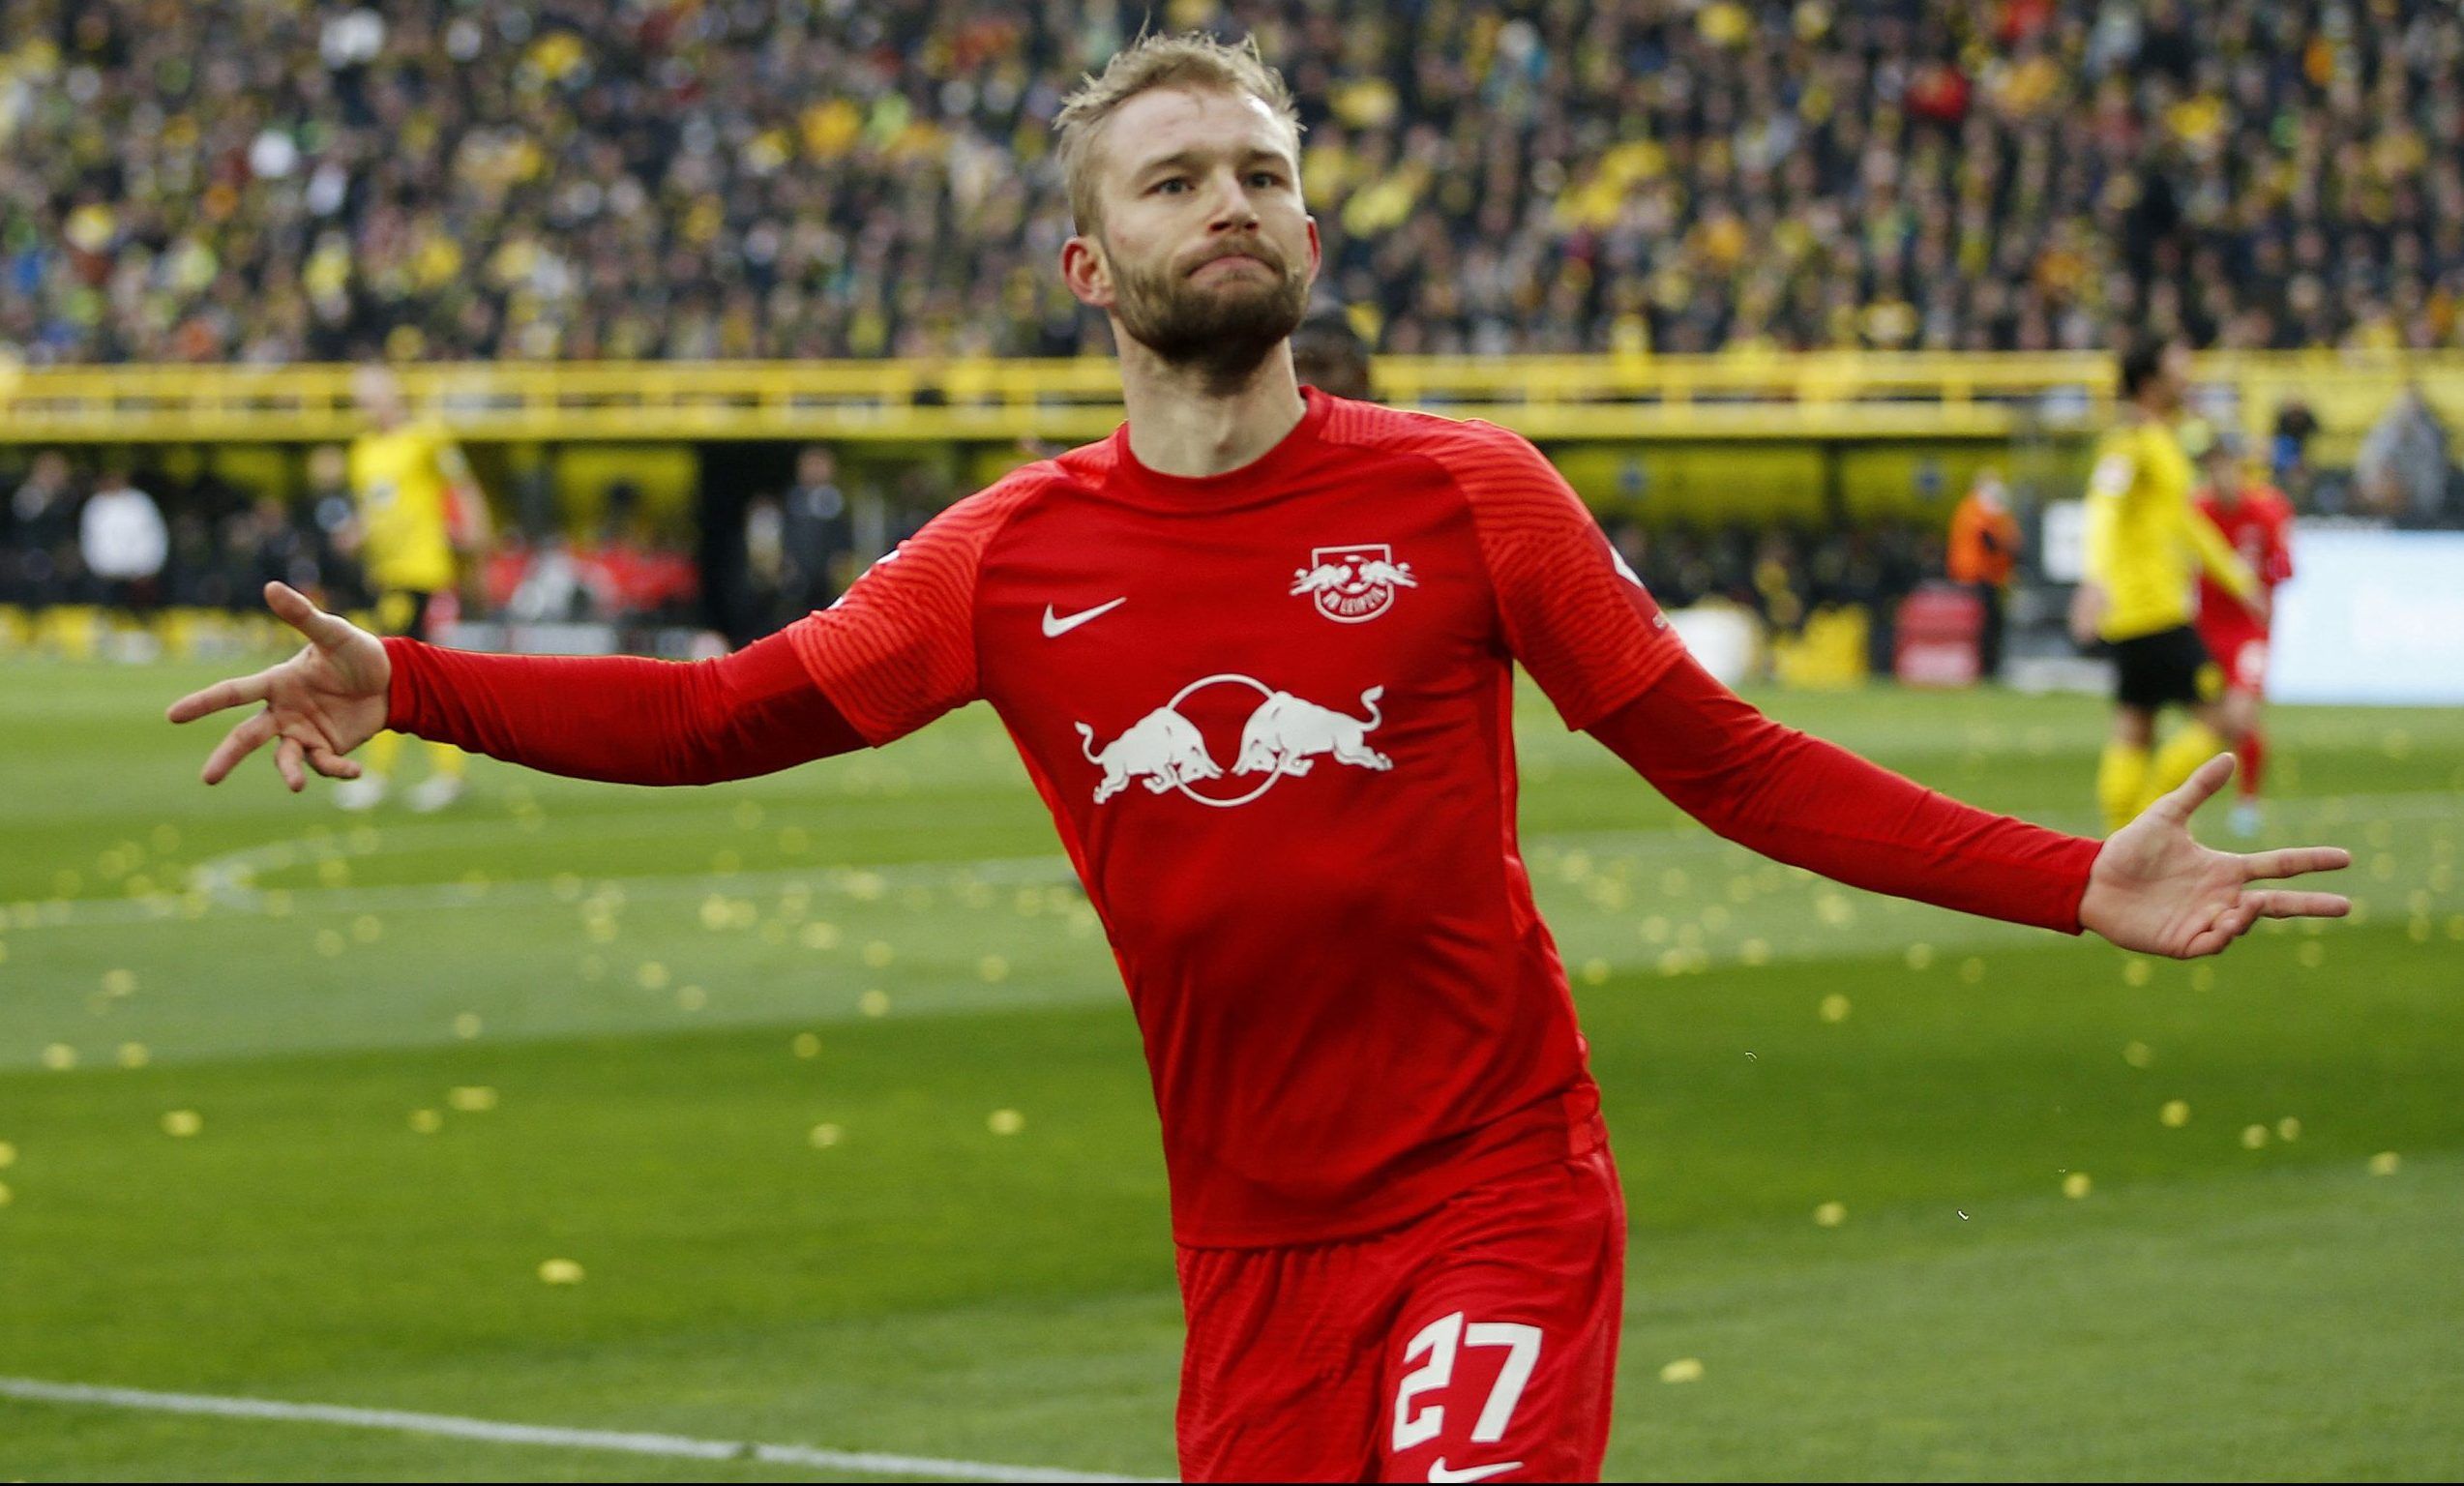 RB Leipzig's Konrad Laimer celebrates goal against Dortmund